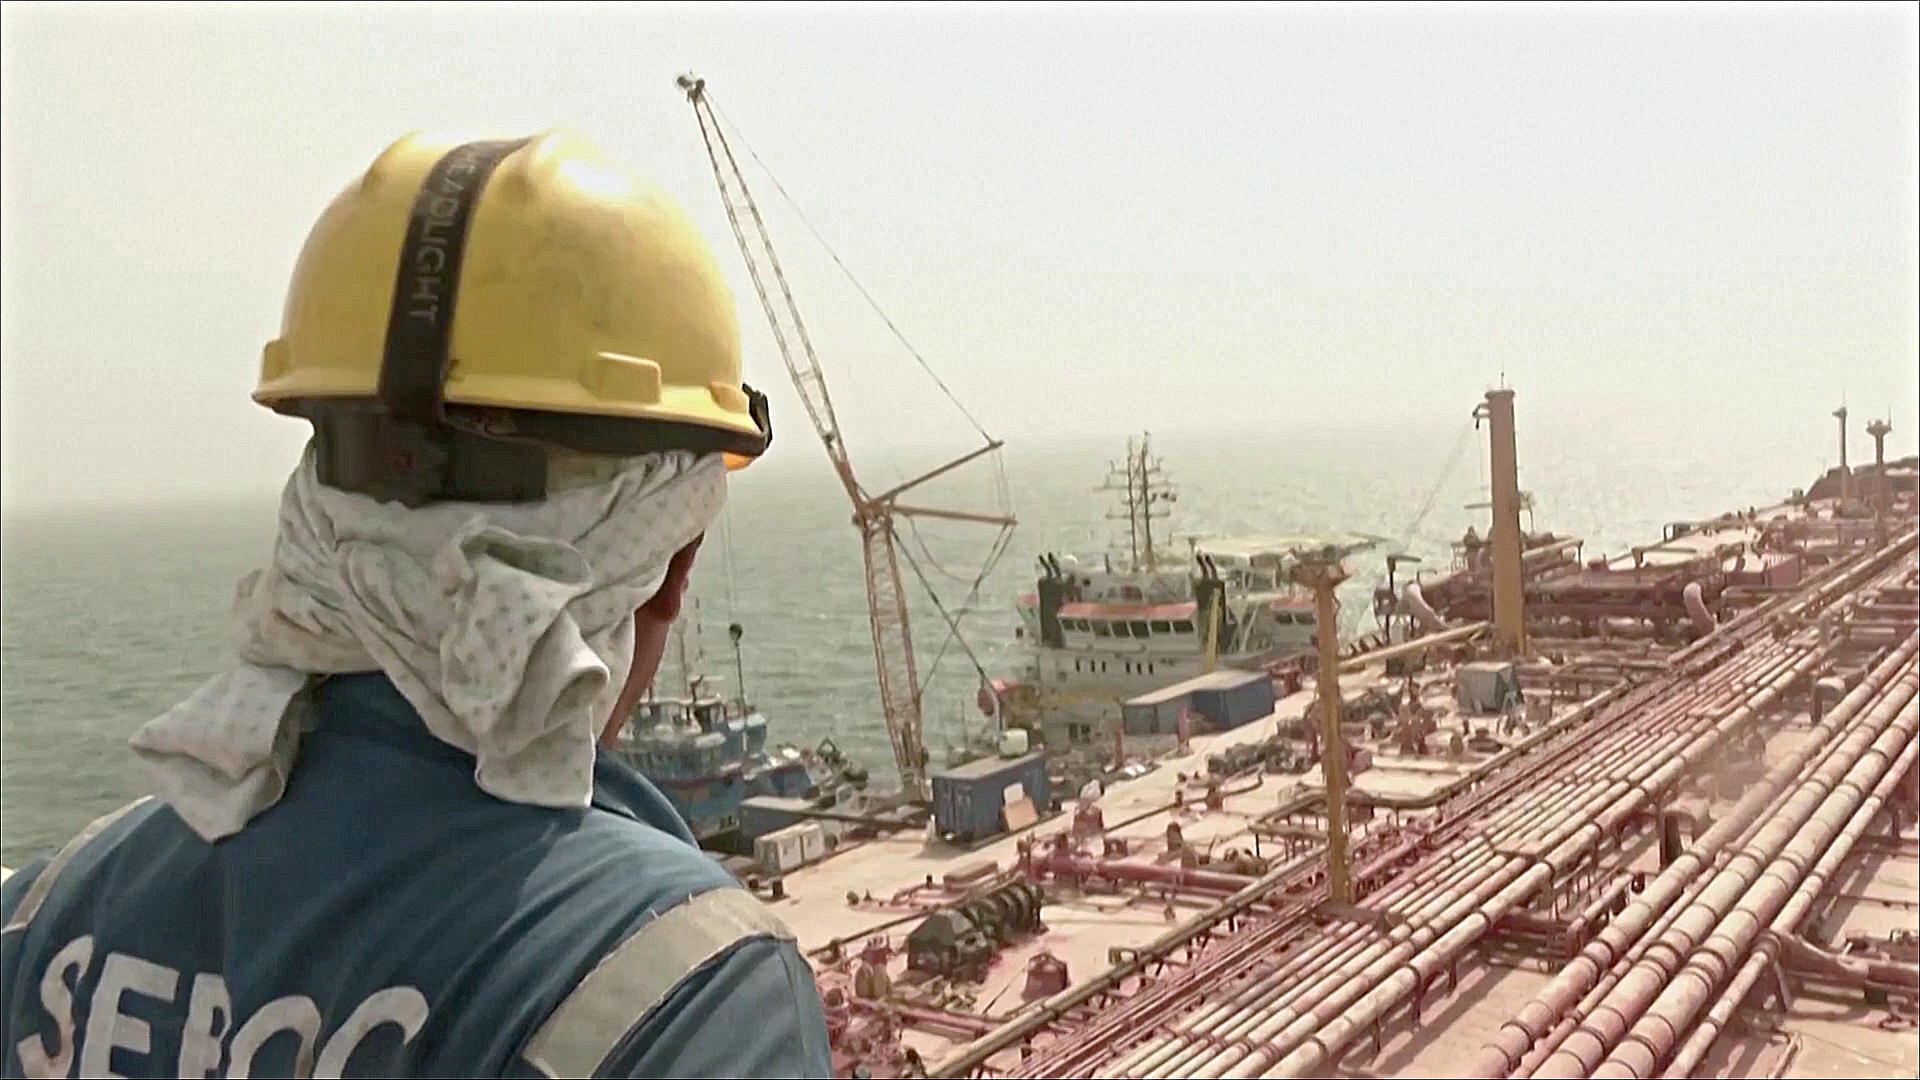 ООН начала откачку более 1 млн баррелей нефти с аварийного танкера в Йемене